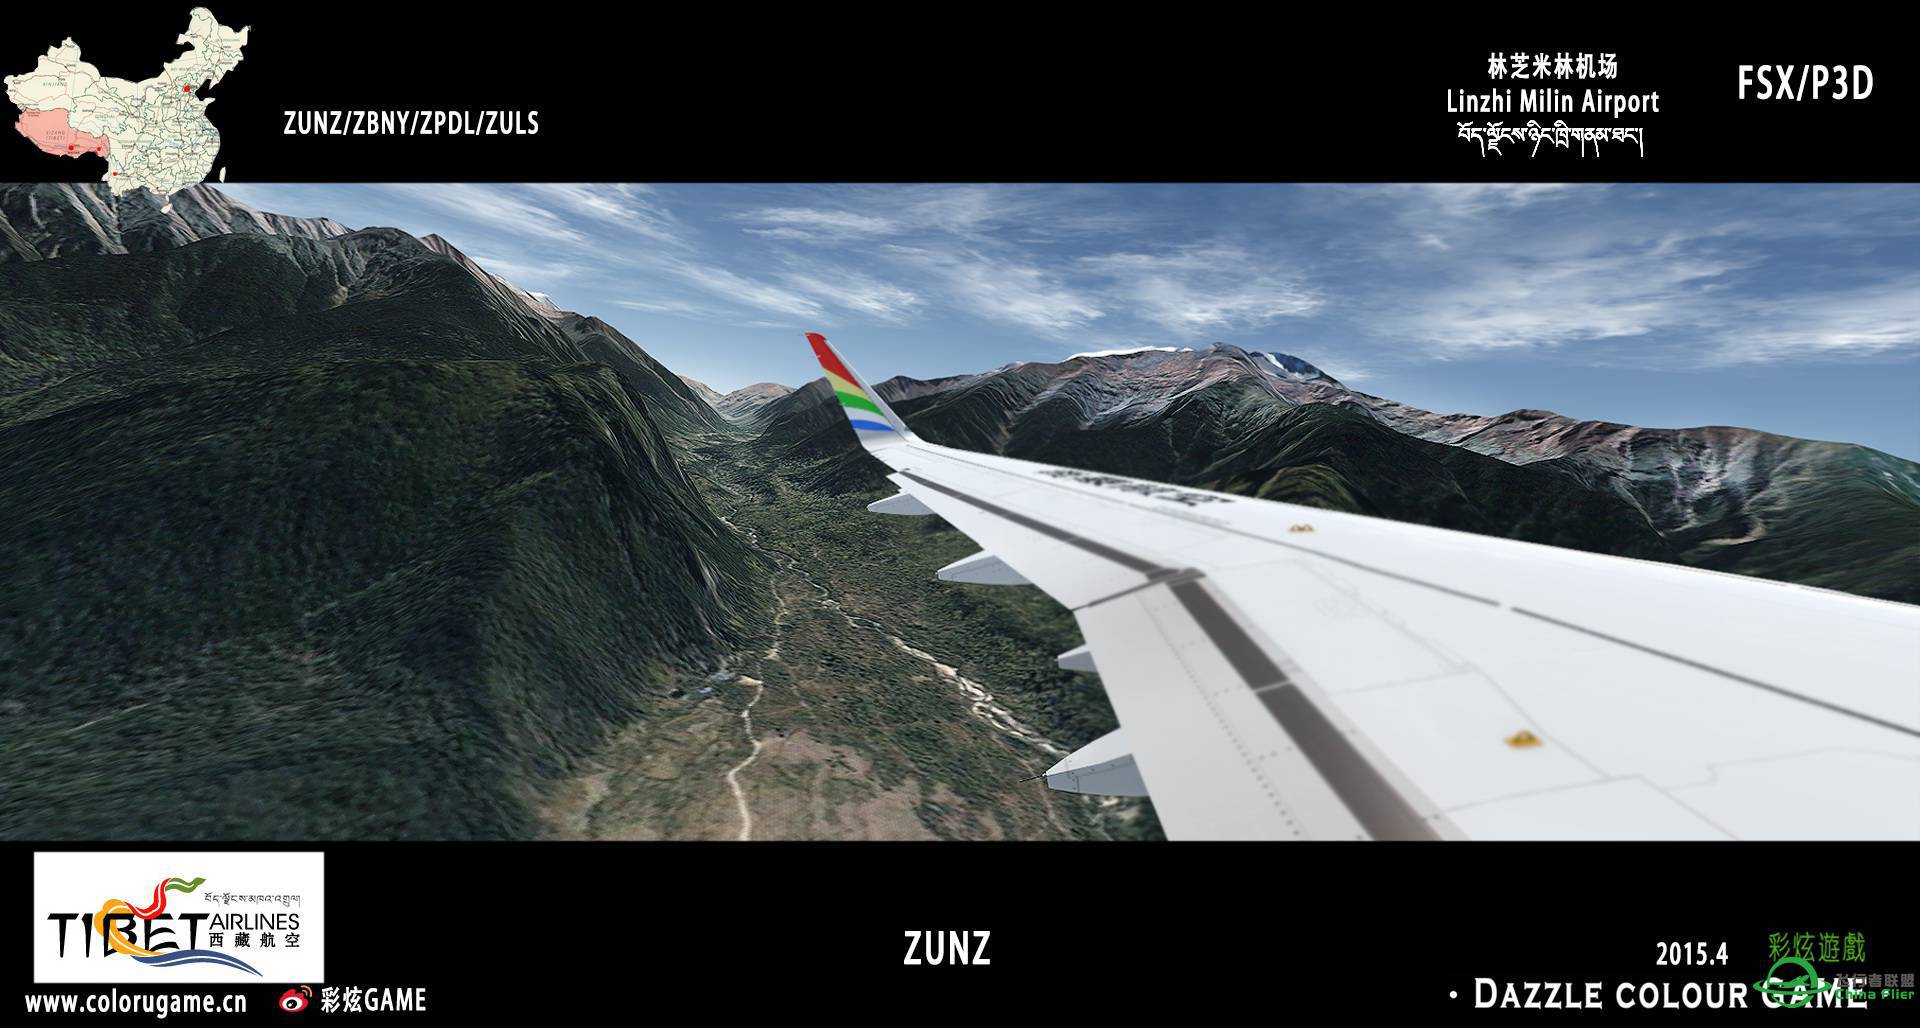 彩炫地景：林芝米林机场（ZUNZ）正式发布！-9653 